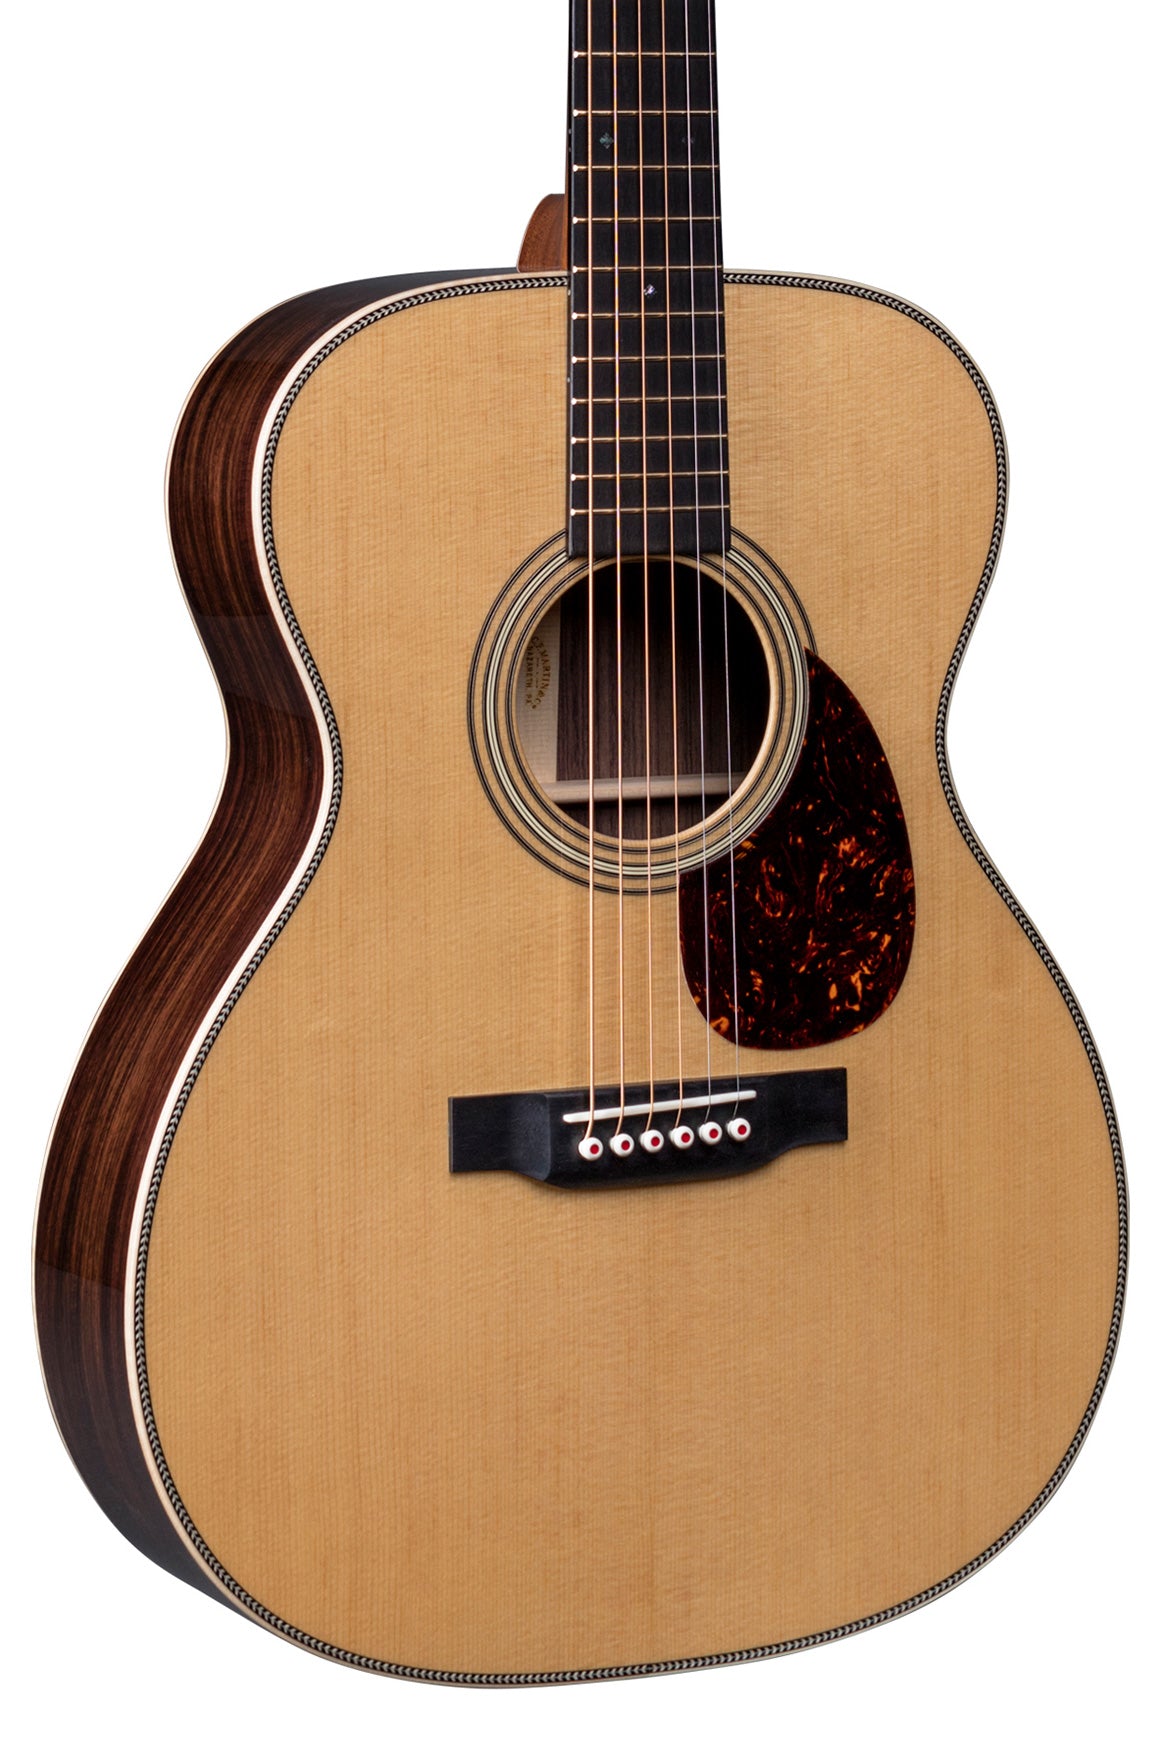 Martin OM-28 Modern Deluxe Acoustic Guitar